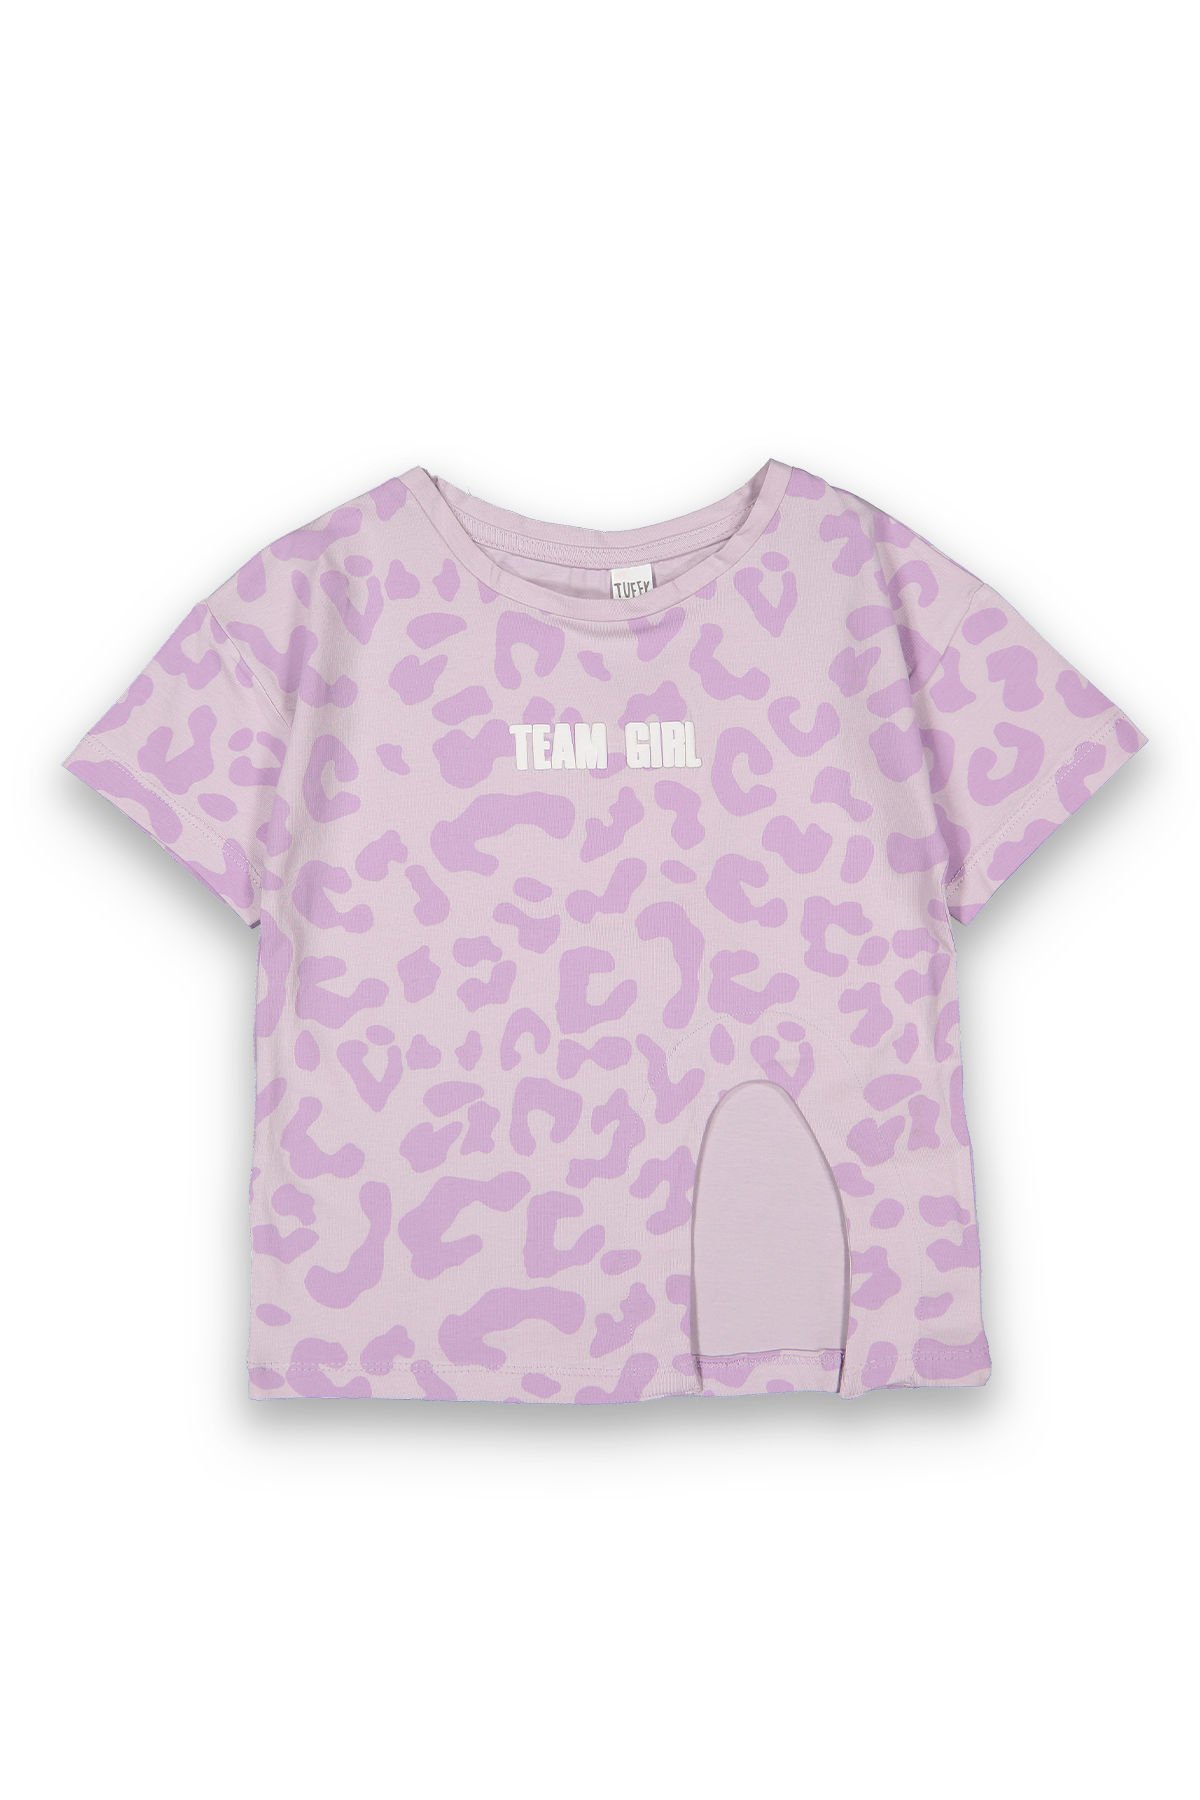 Tuffy Benek Desenli Team Girl Baskılı Kız Çocuk T-Shirt-9110